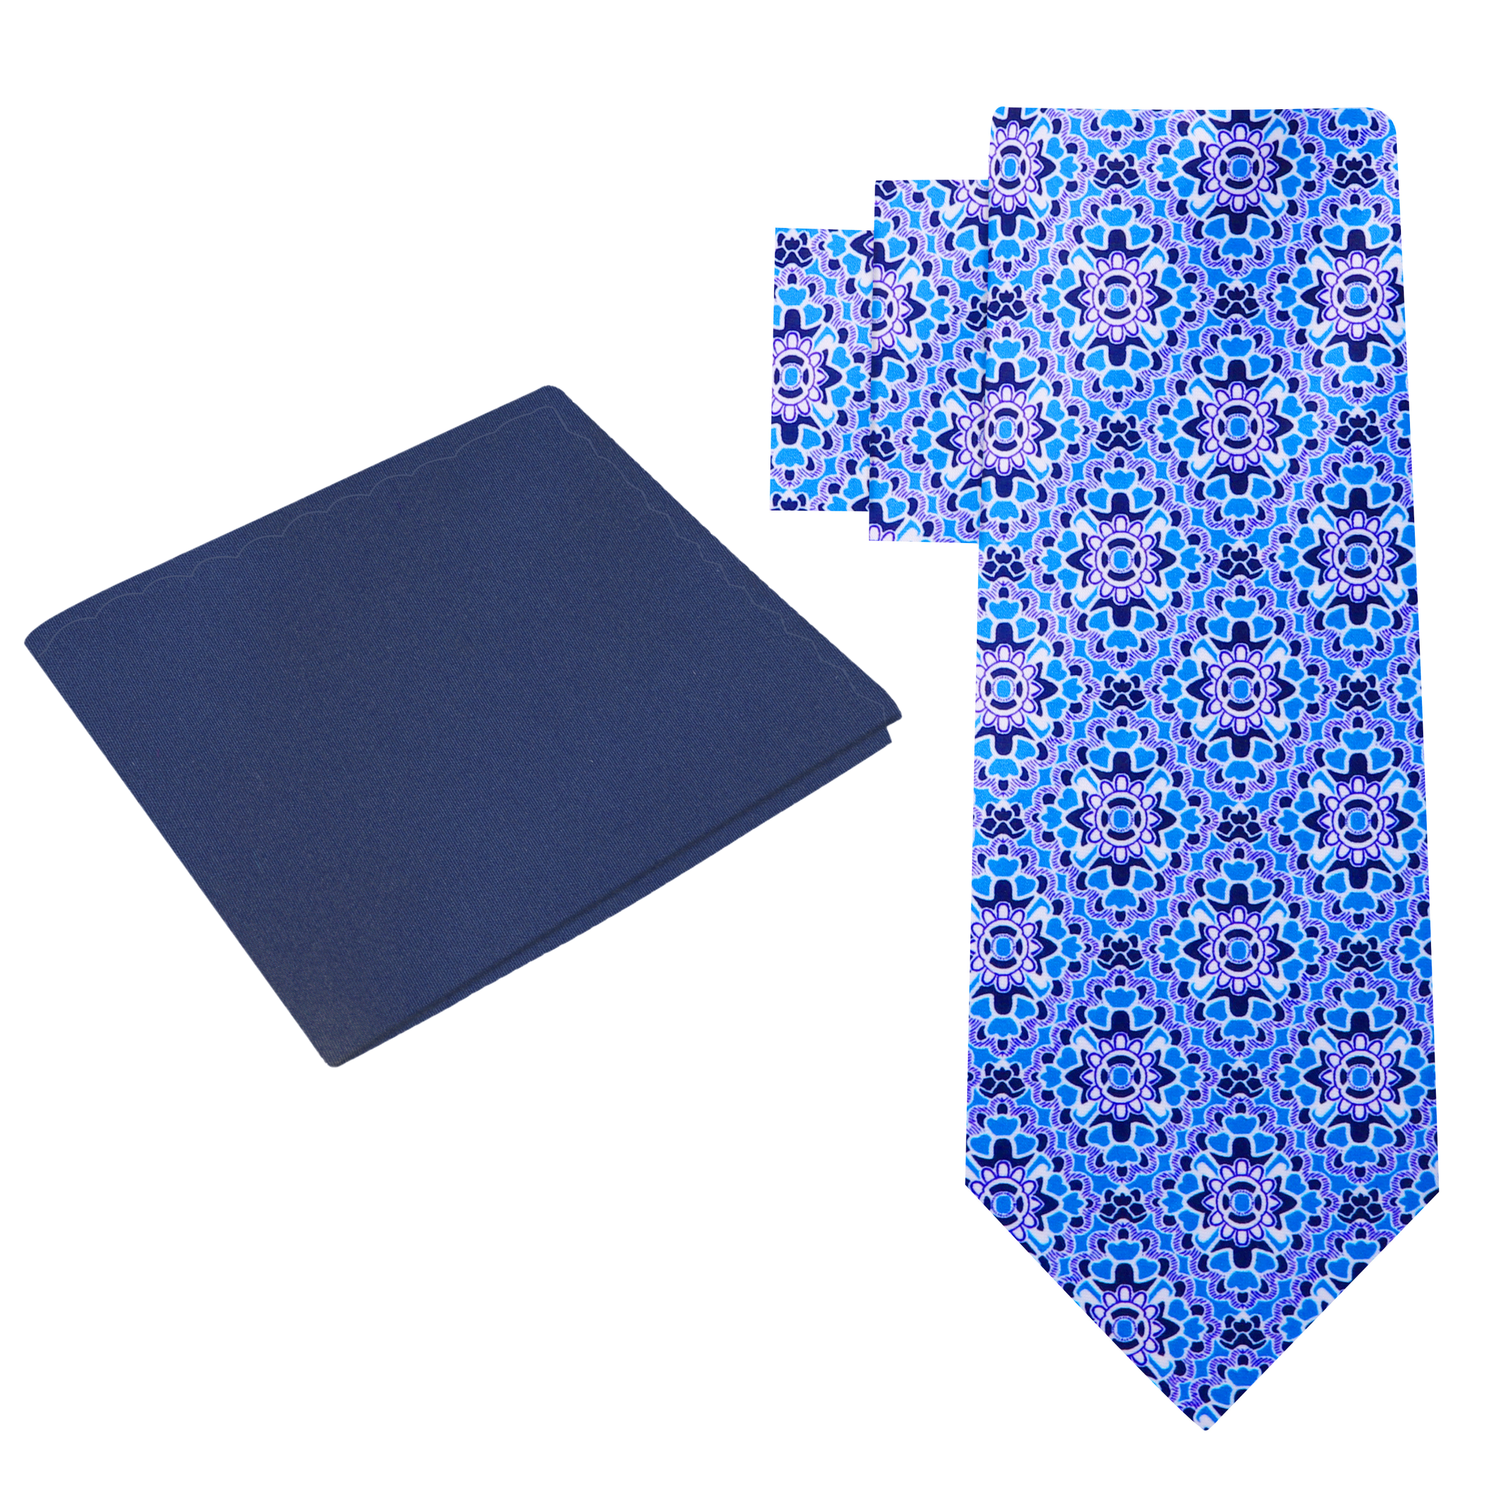 Alt View: Blue Mosaic Necktie and Blue Square